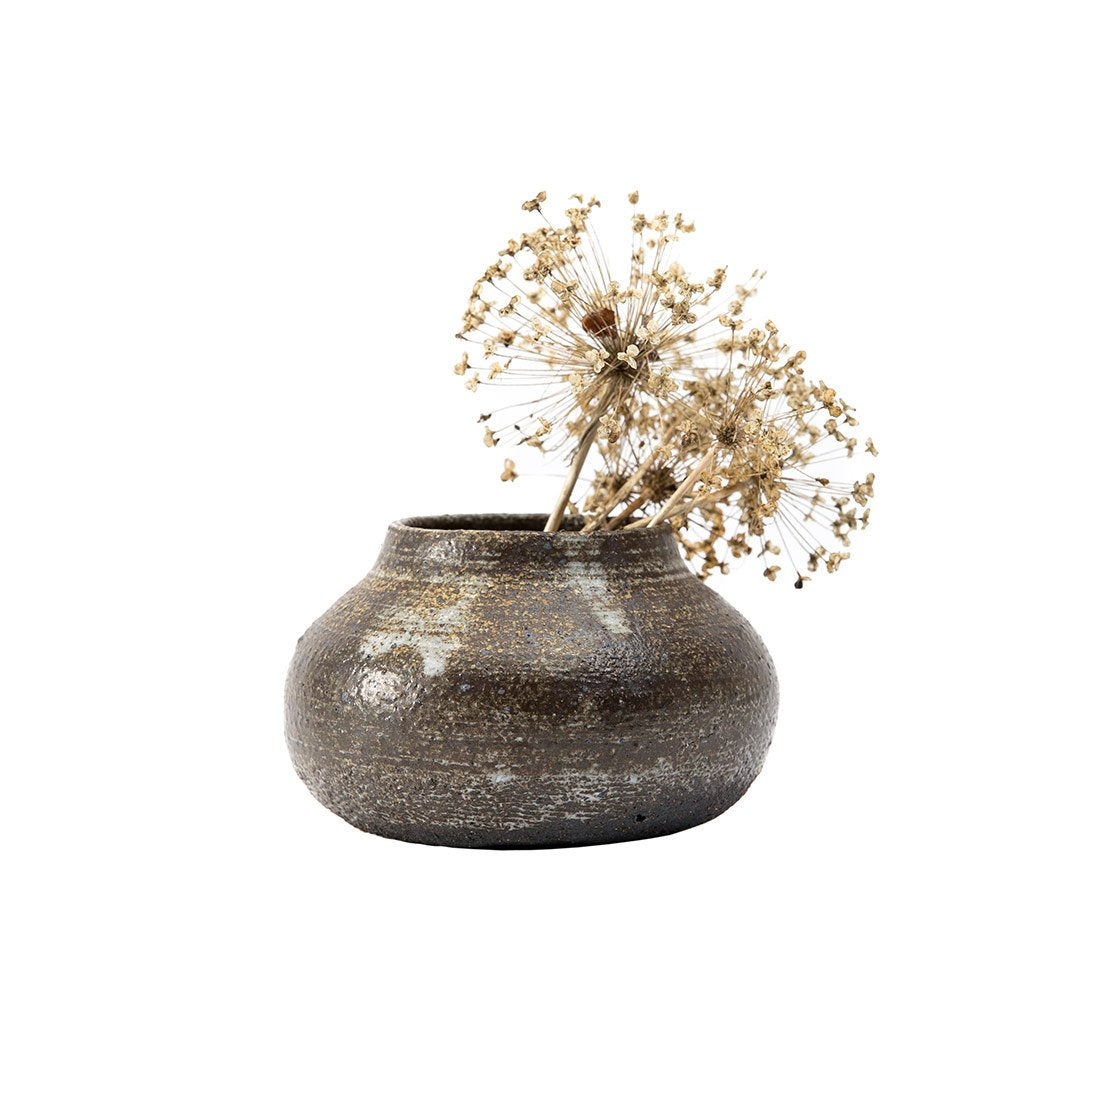 Beguiling Wild Ceramic Vase